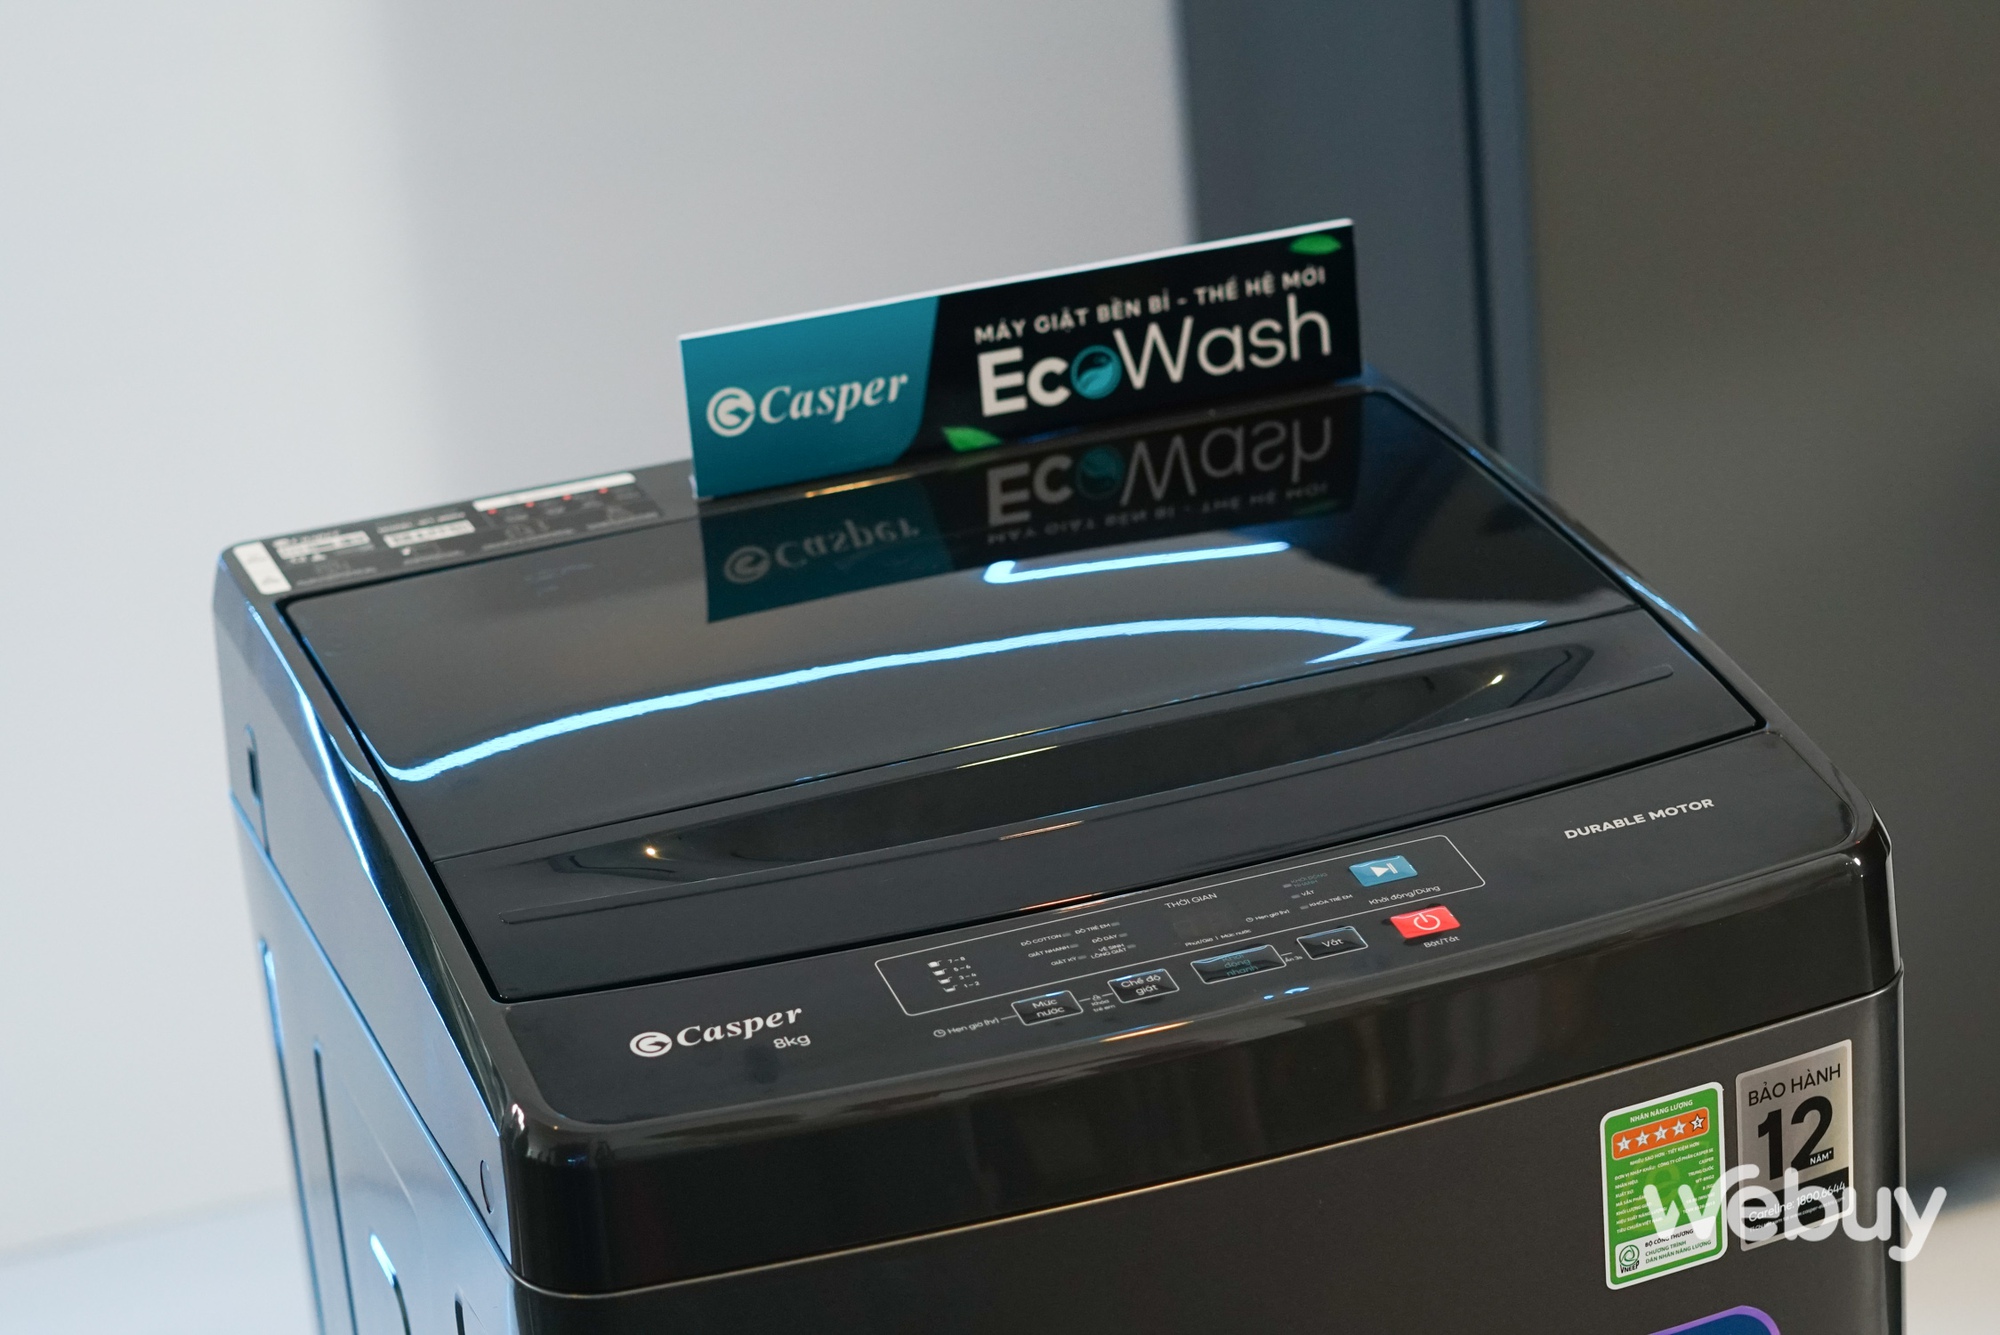 Casper ra mắt loạt máy giặt và tủ lạnh với nhiều tính năng cao cấp ở tầm giá dễ tiếp cận - Ảnh 5.